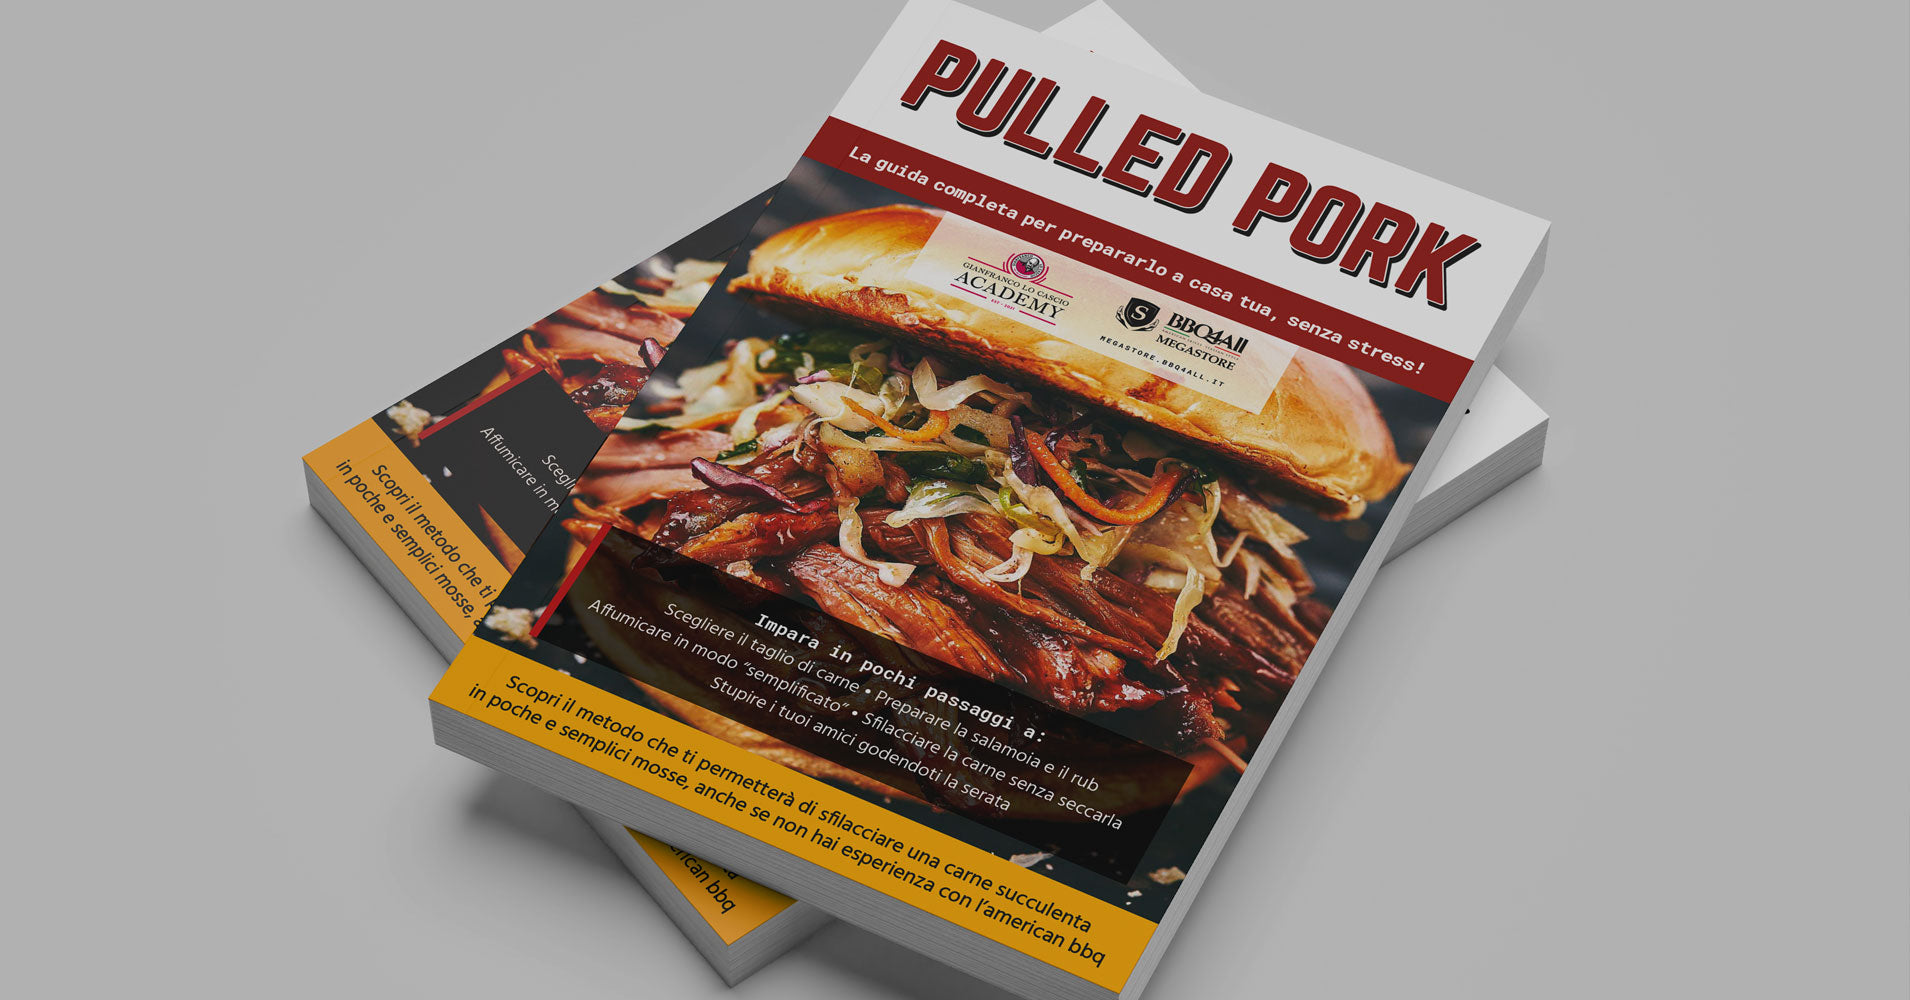 Guida BBQ4All - Come si fa il Pulled pork